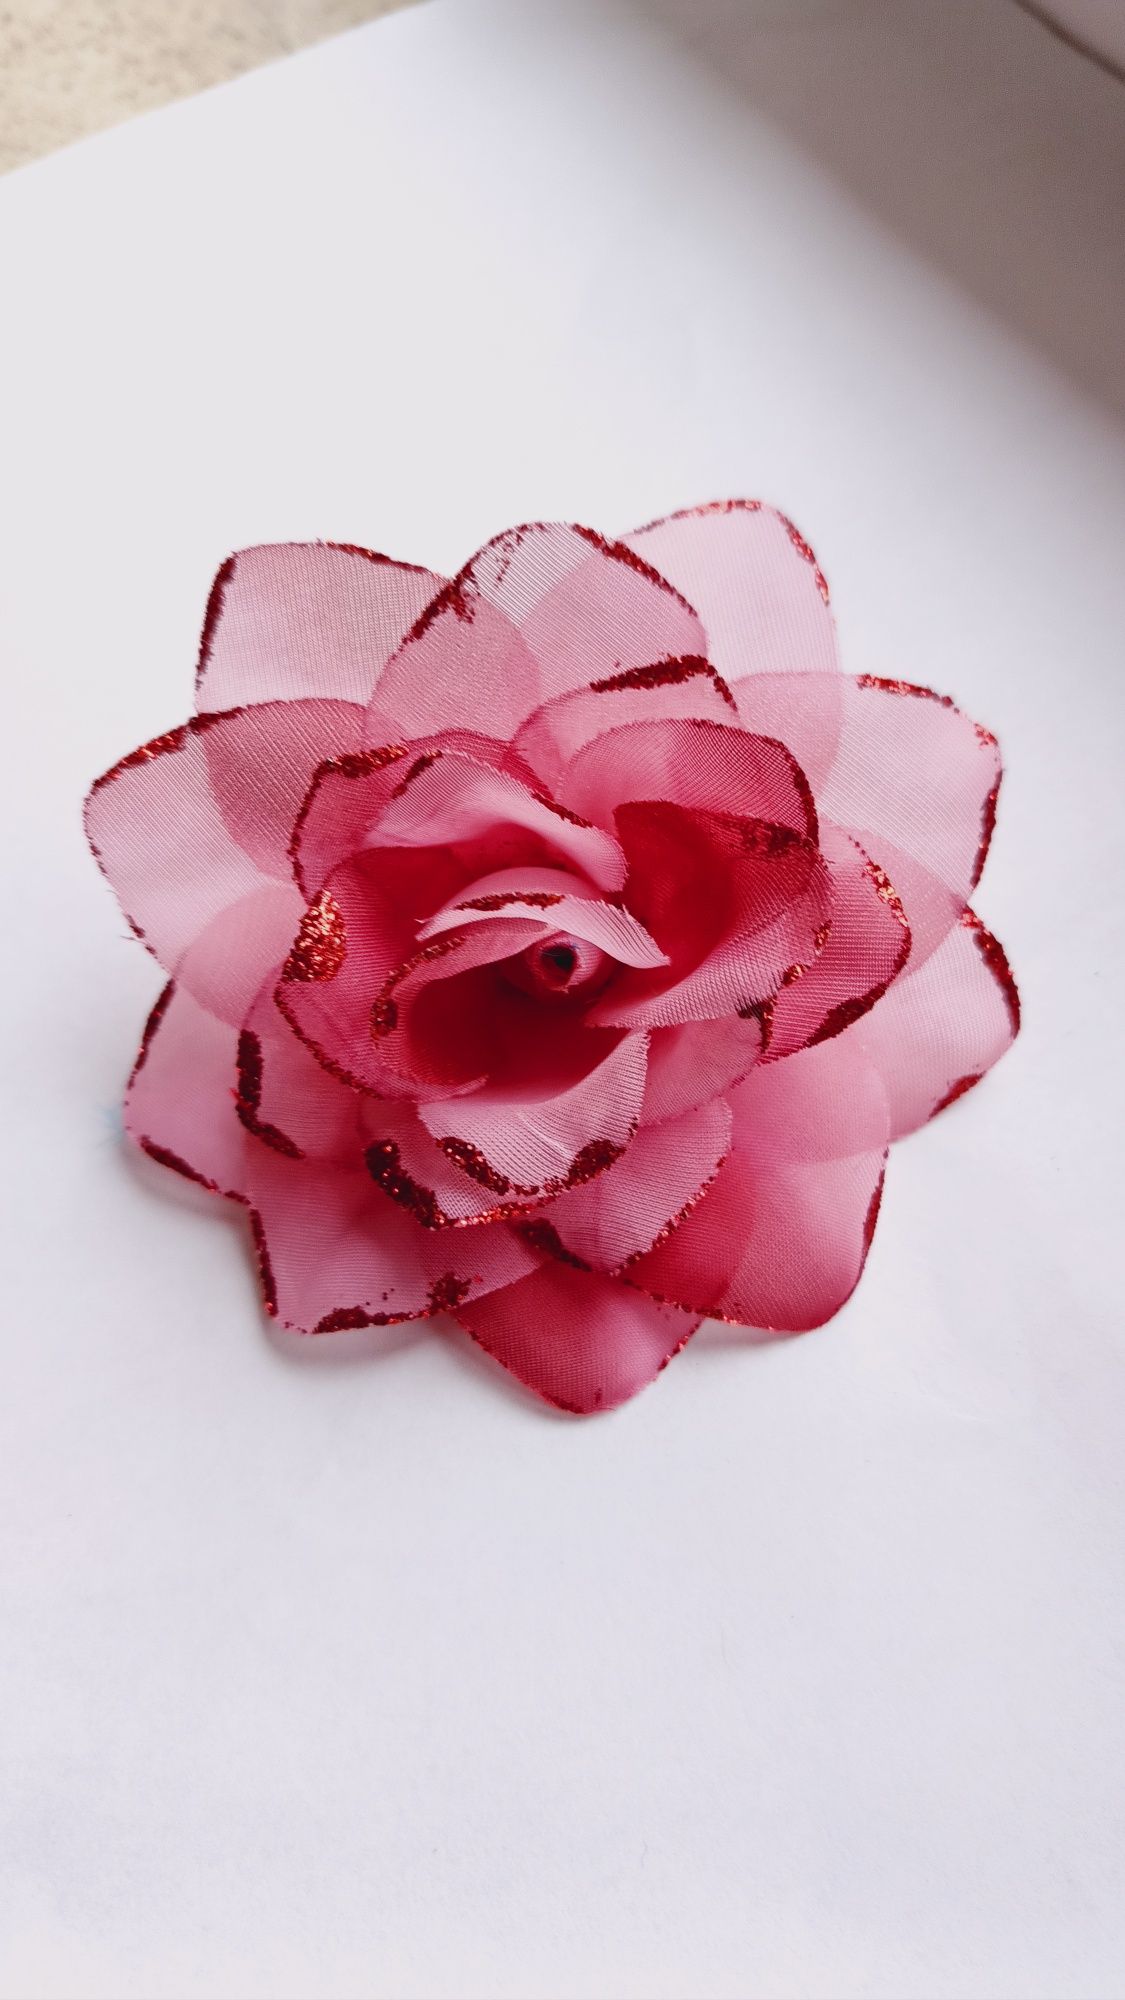 Broszka "Kwiat róży", do ubrań, włosów, średnica 10cm, stroik